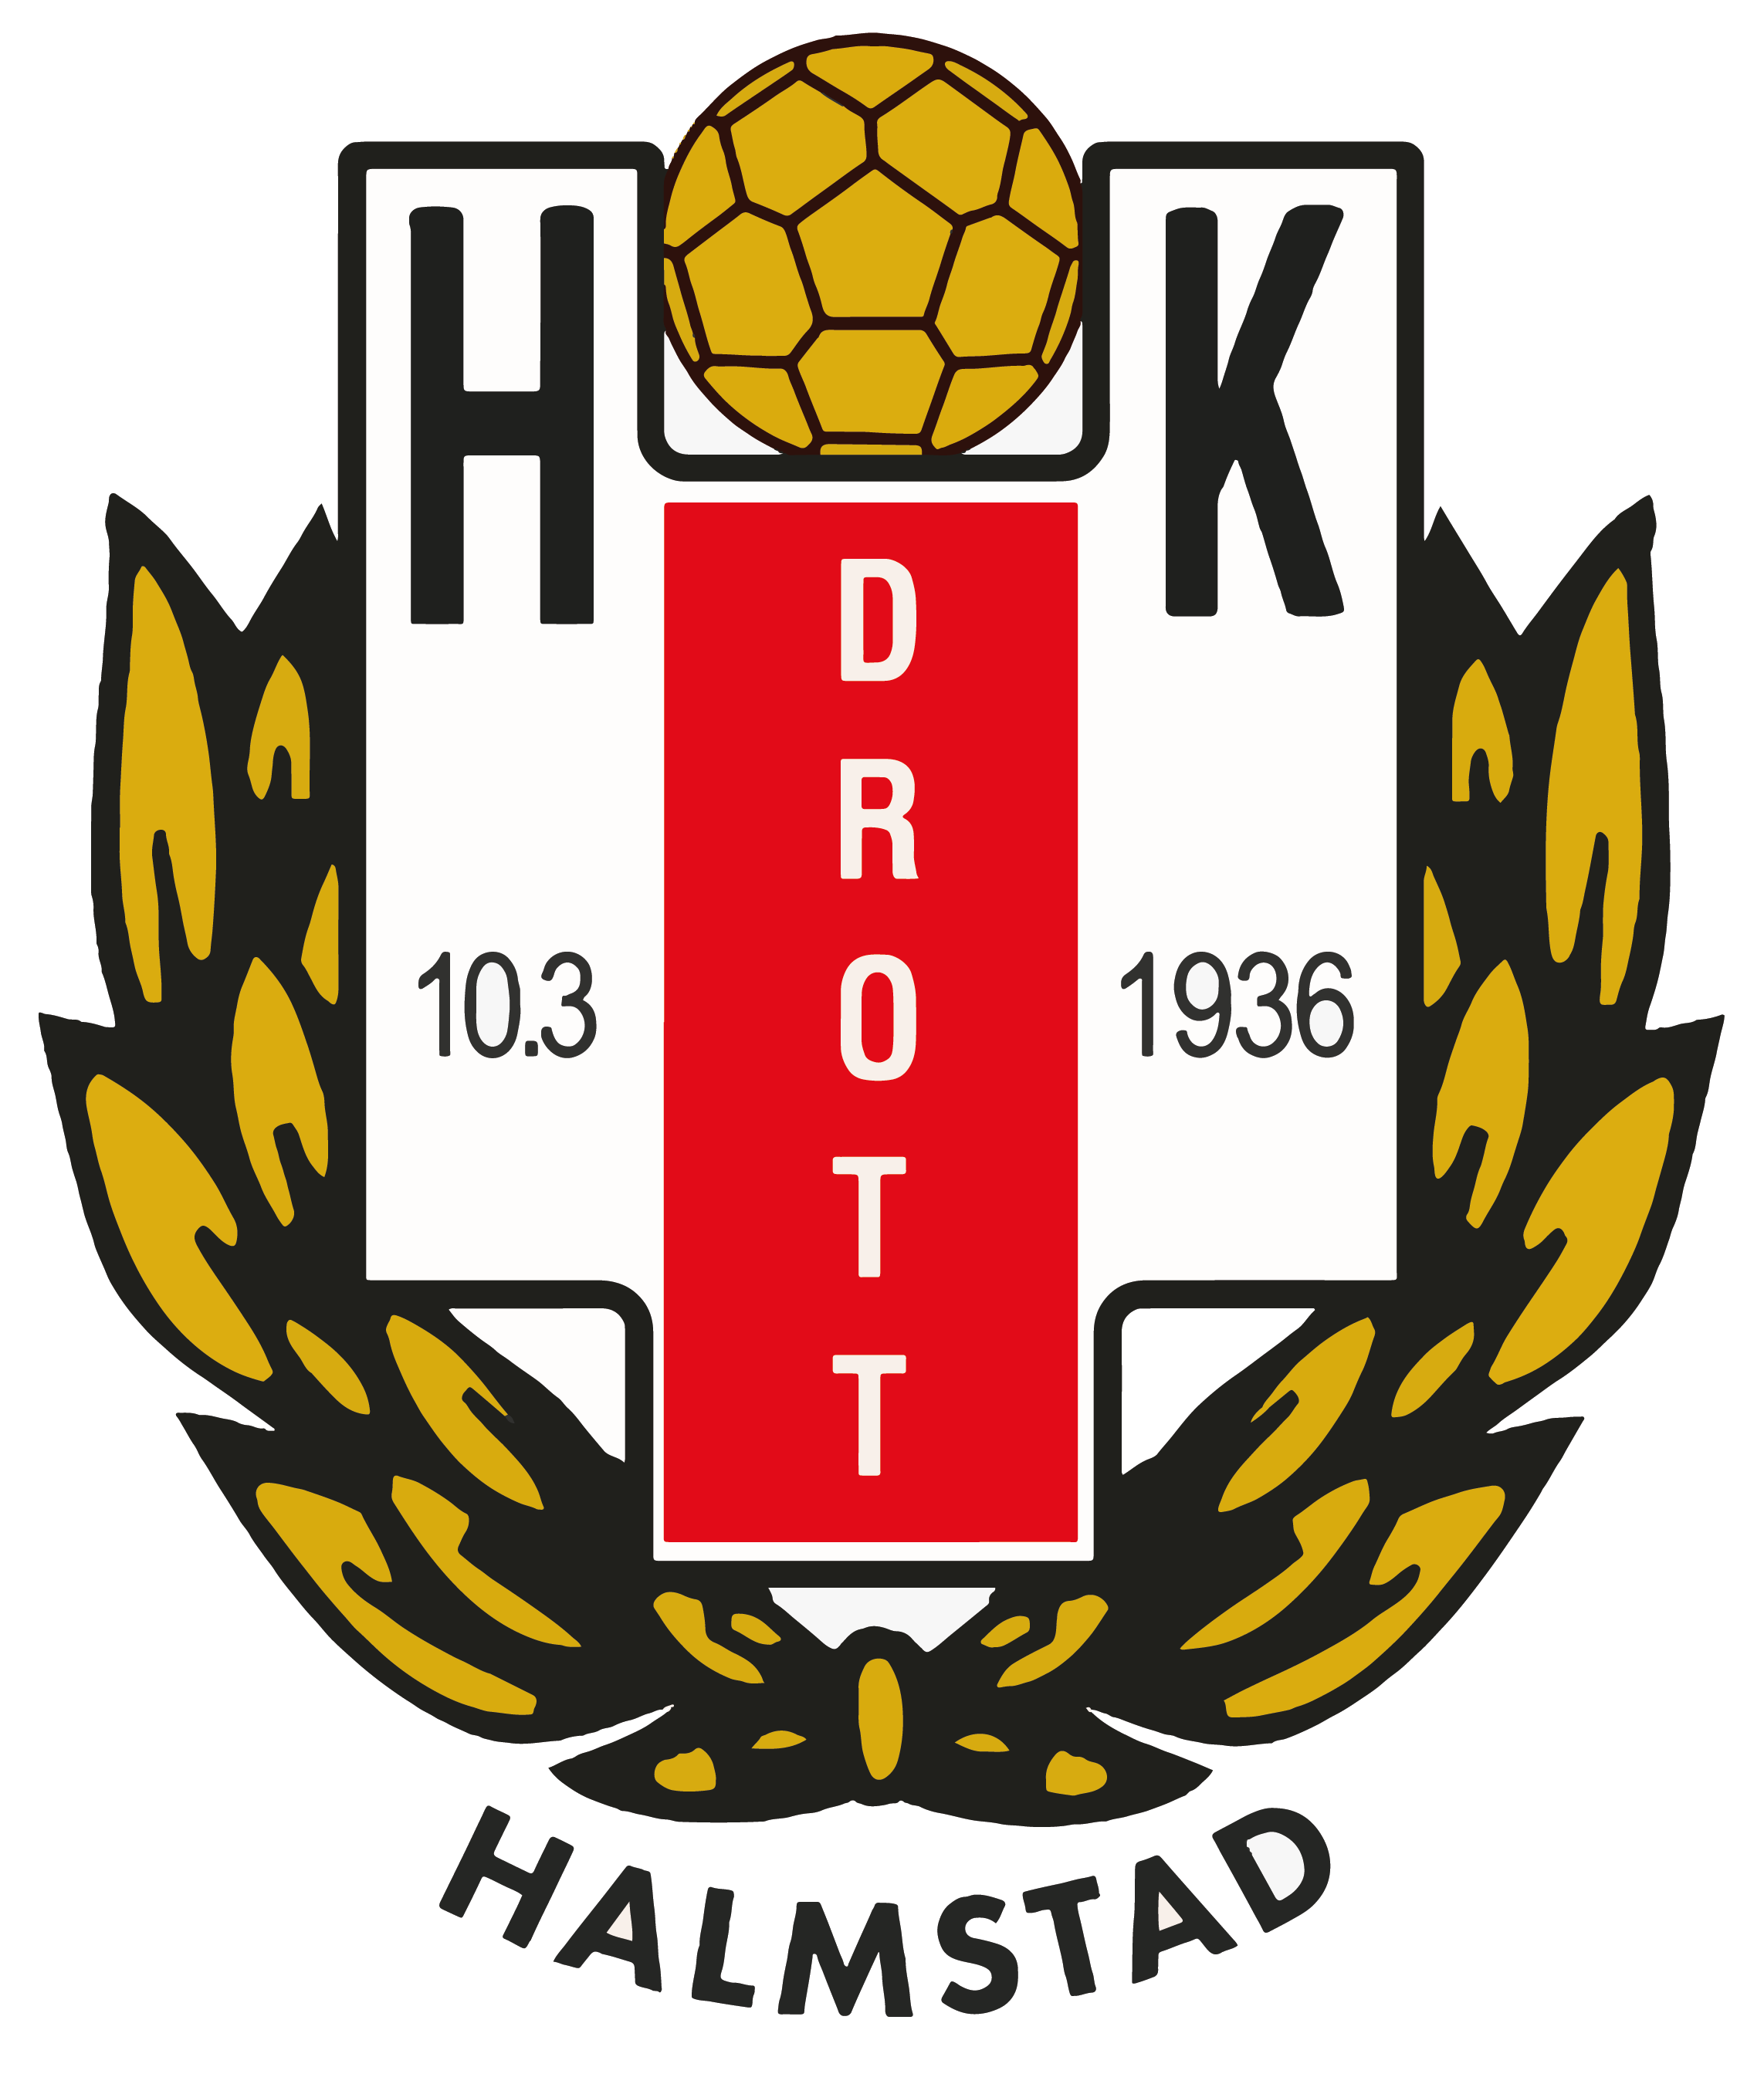 HK Drotts emblem